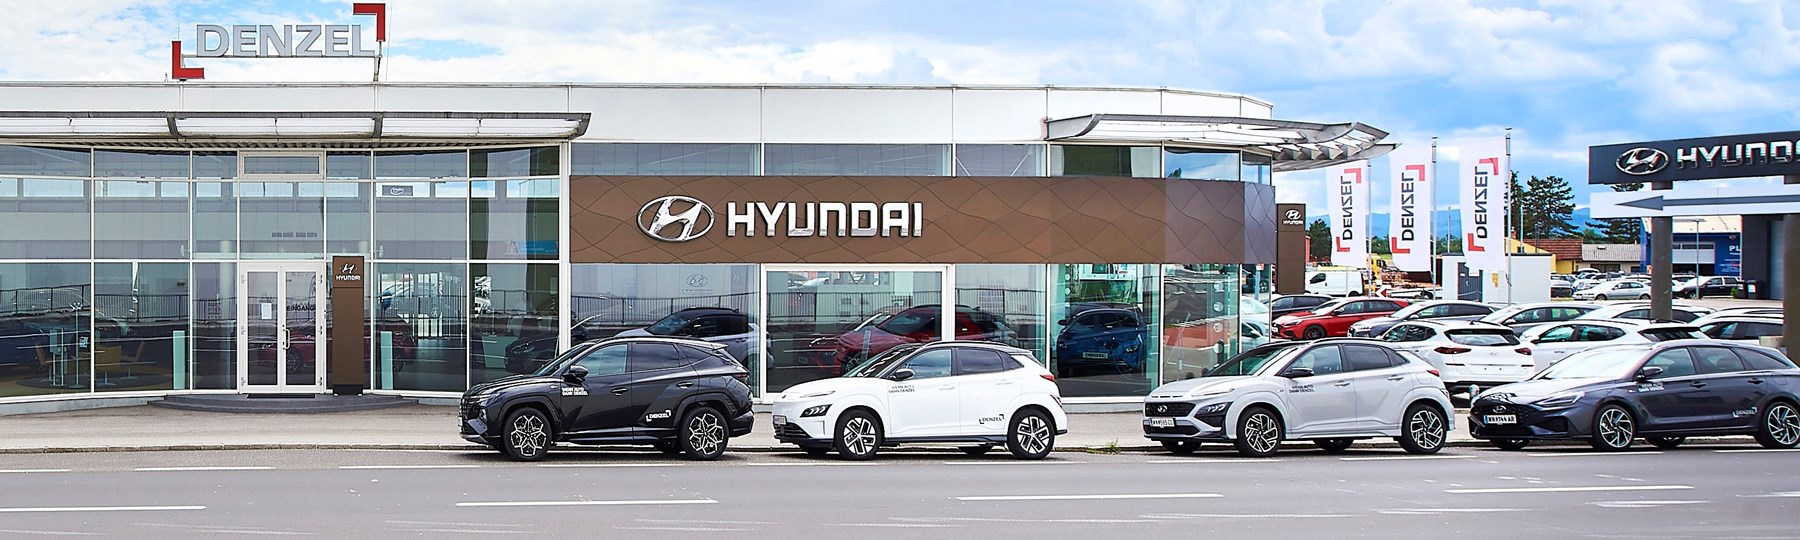 Hyundai Homepage 1